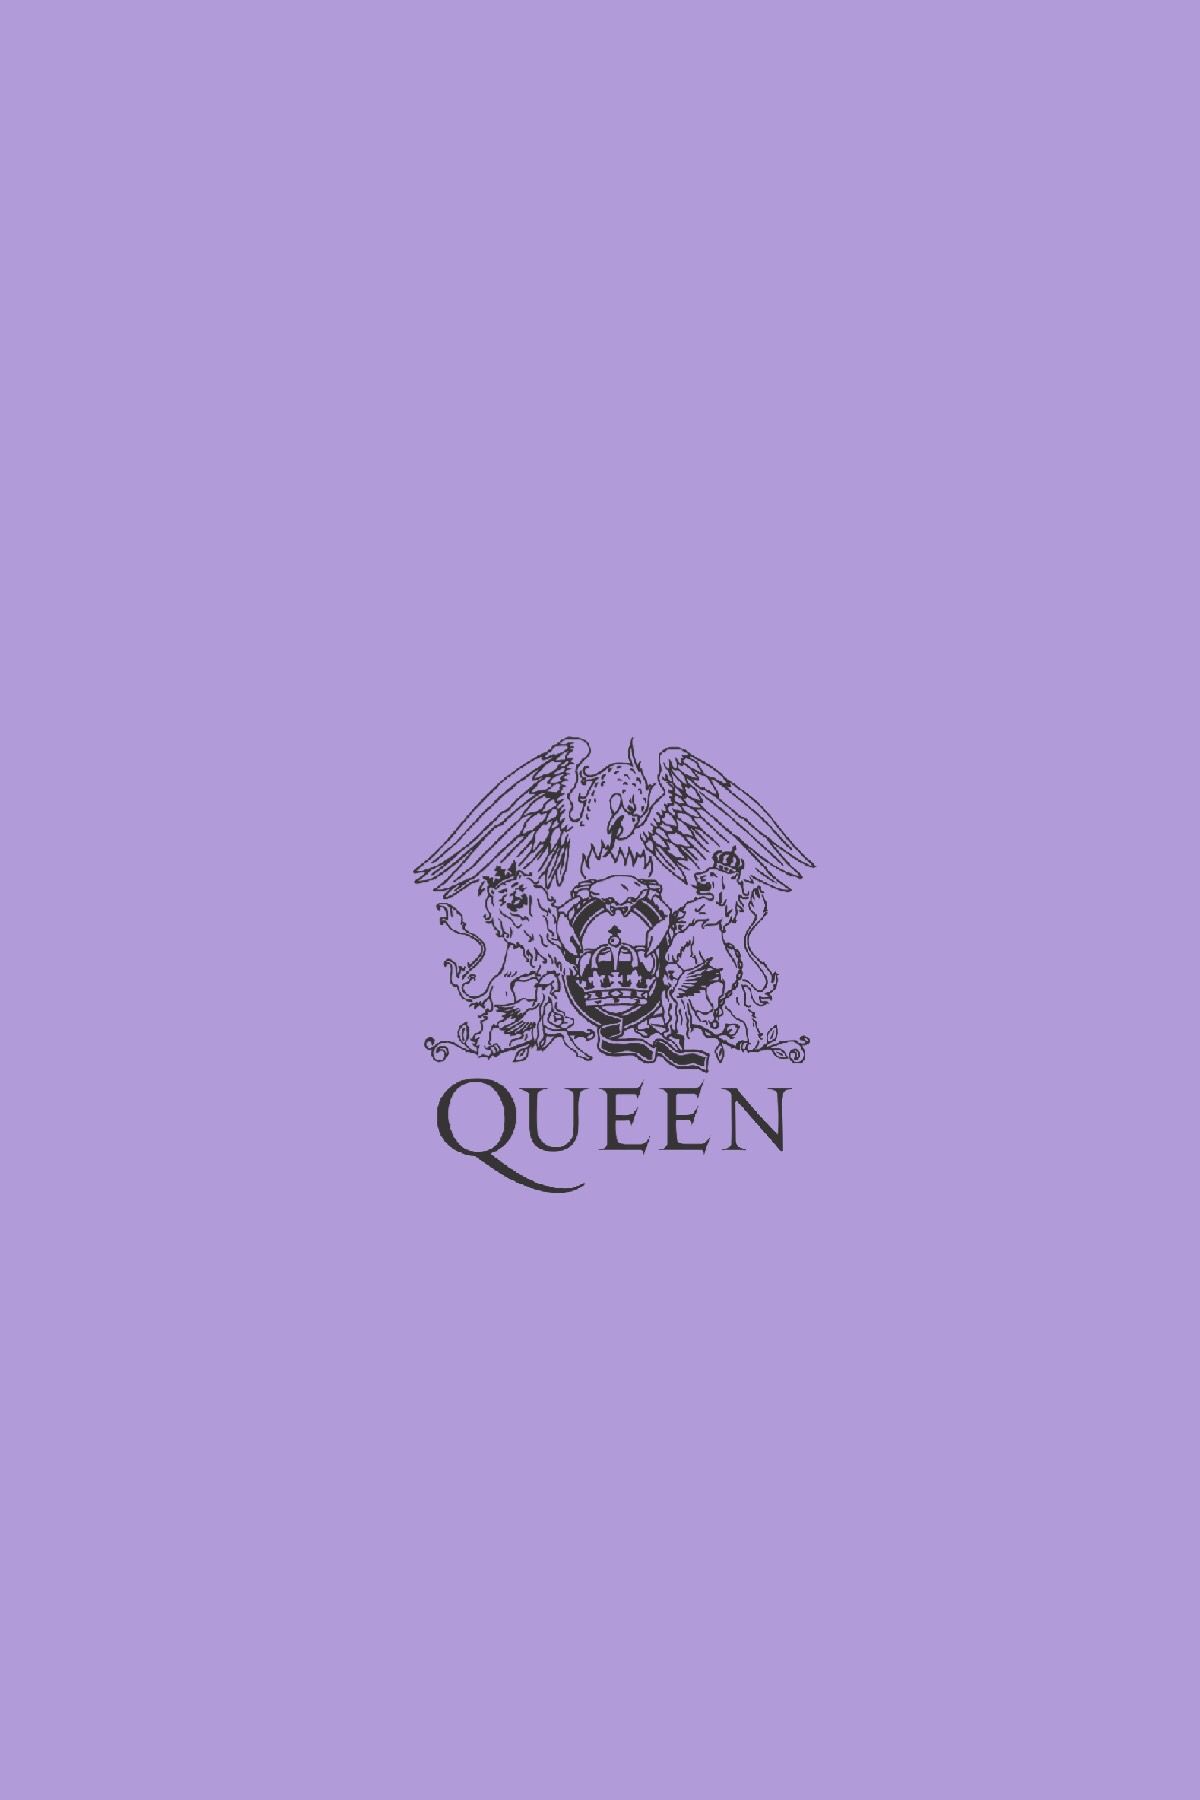 Queen Aesthetic Wallpapers